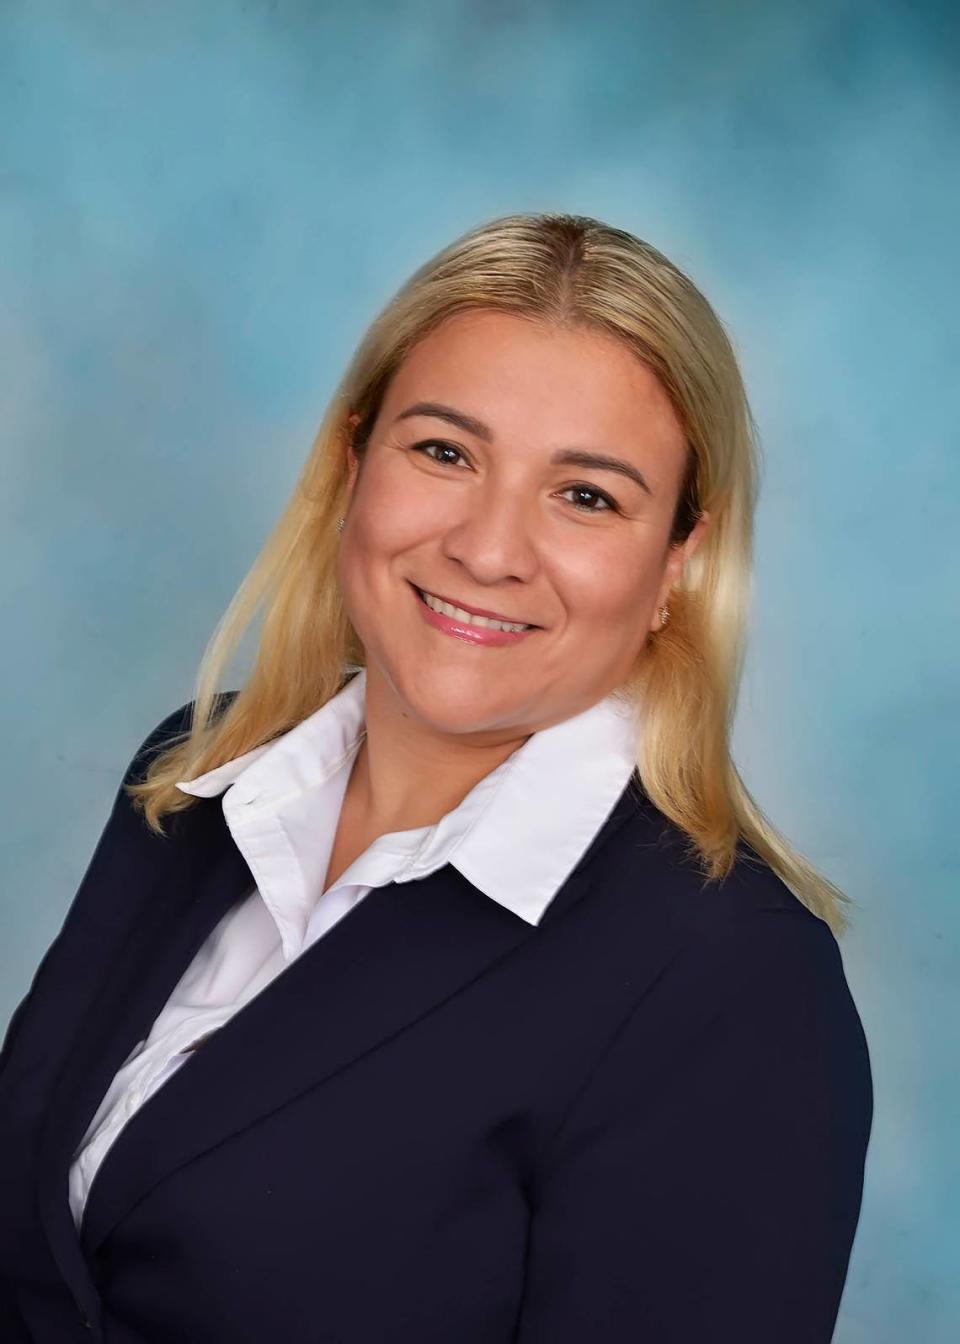 Claudia Rainville es candidata al escaño del Distrito 11 de la Comisión del Condado Miami-Dade.